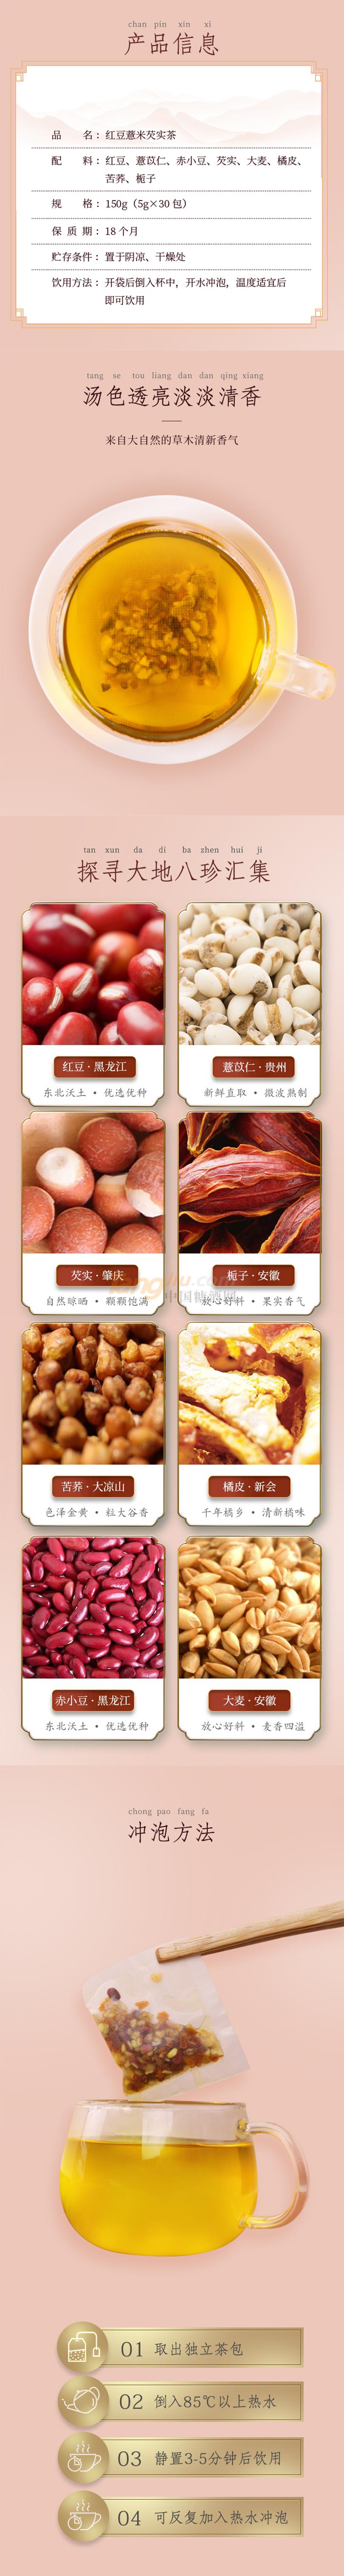 紅豆薏米茶150g (3).jpg